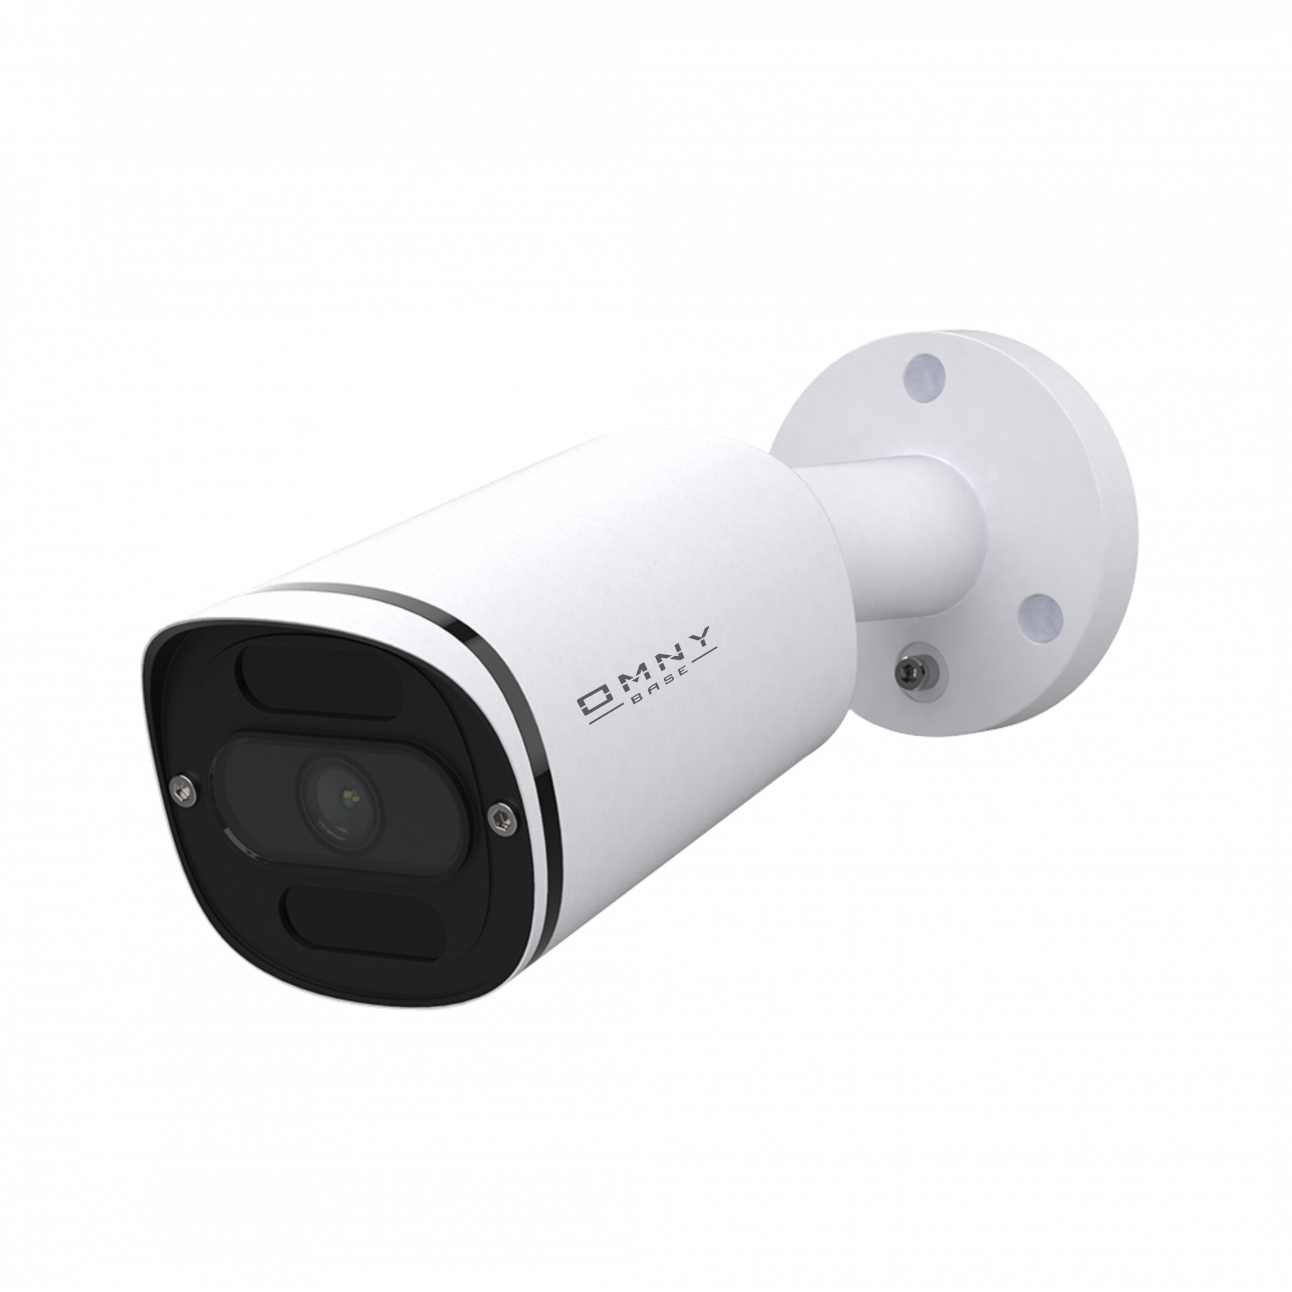 IP камера OMNY BASE miniBullet5E-WDU 36, минибуллет 5Мп (2592×1944) 30к/с, 3.6мм, F2.0, 802.3af A/B, 12±1В DC, ИК до 30м, EasyMic, WDR 120dB, USB2.0